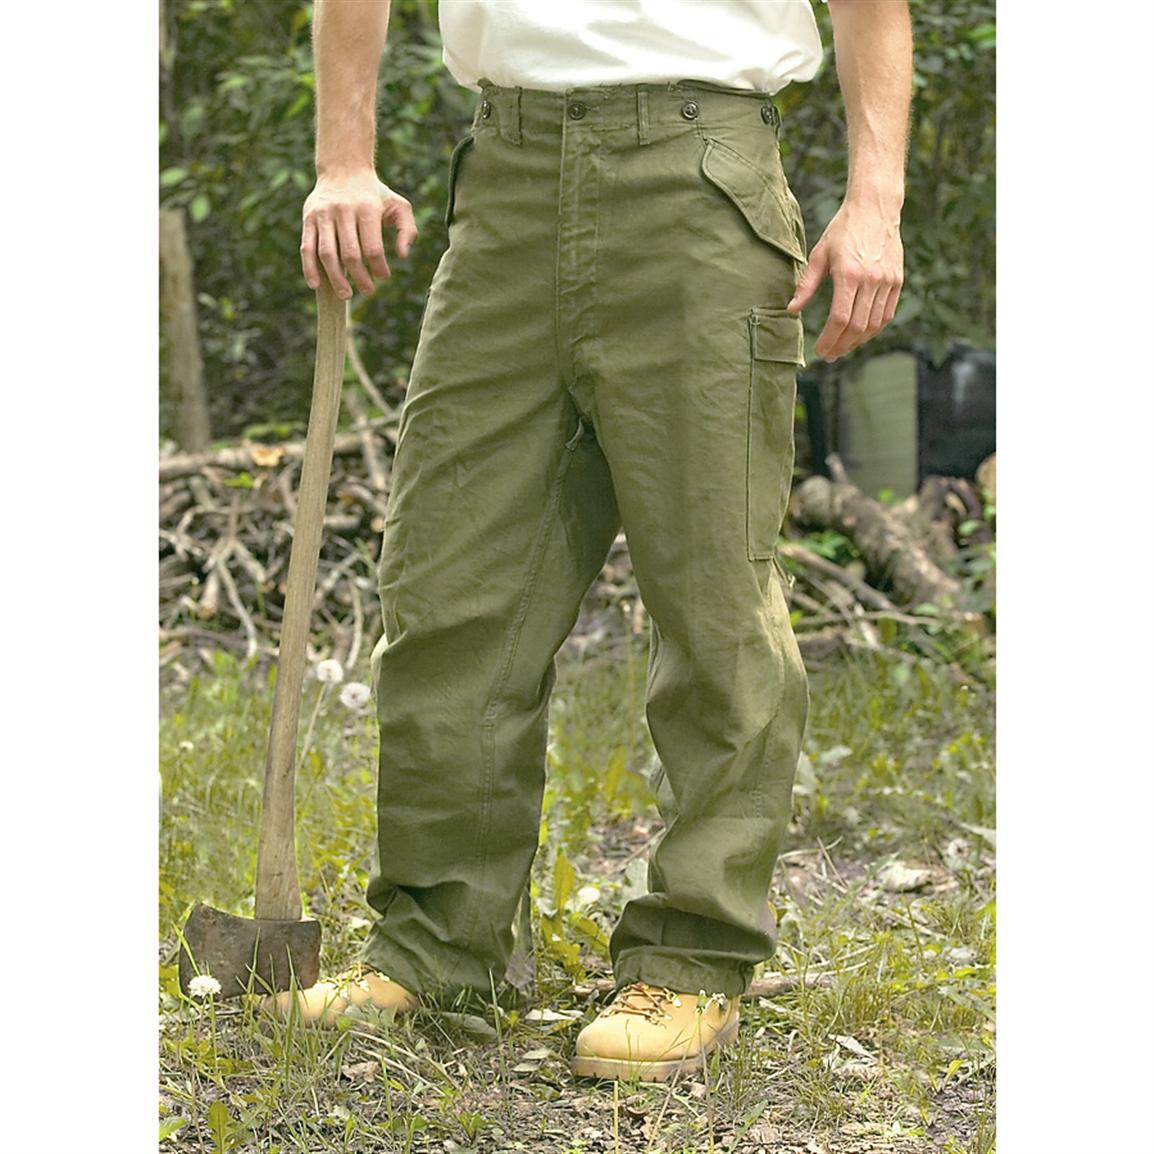 M65 field pants